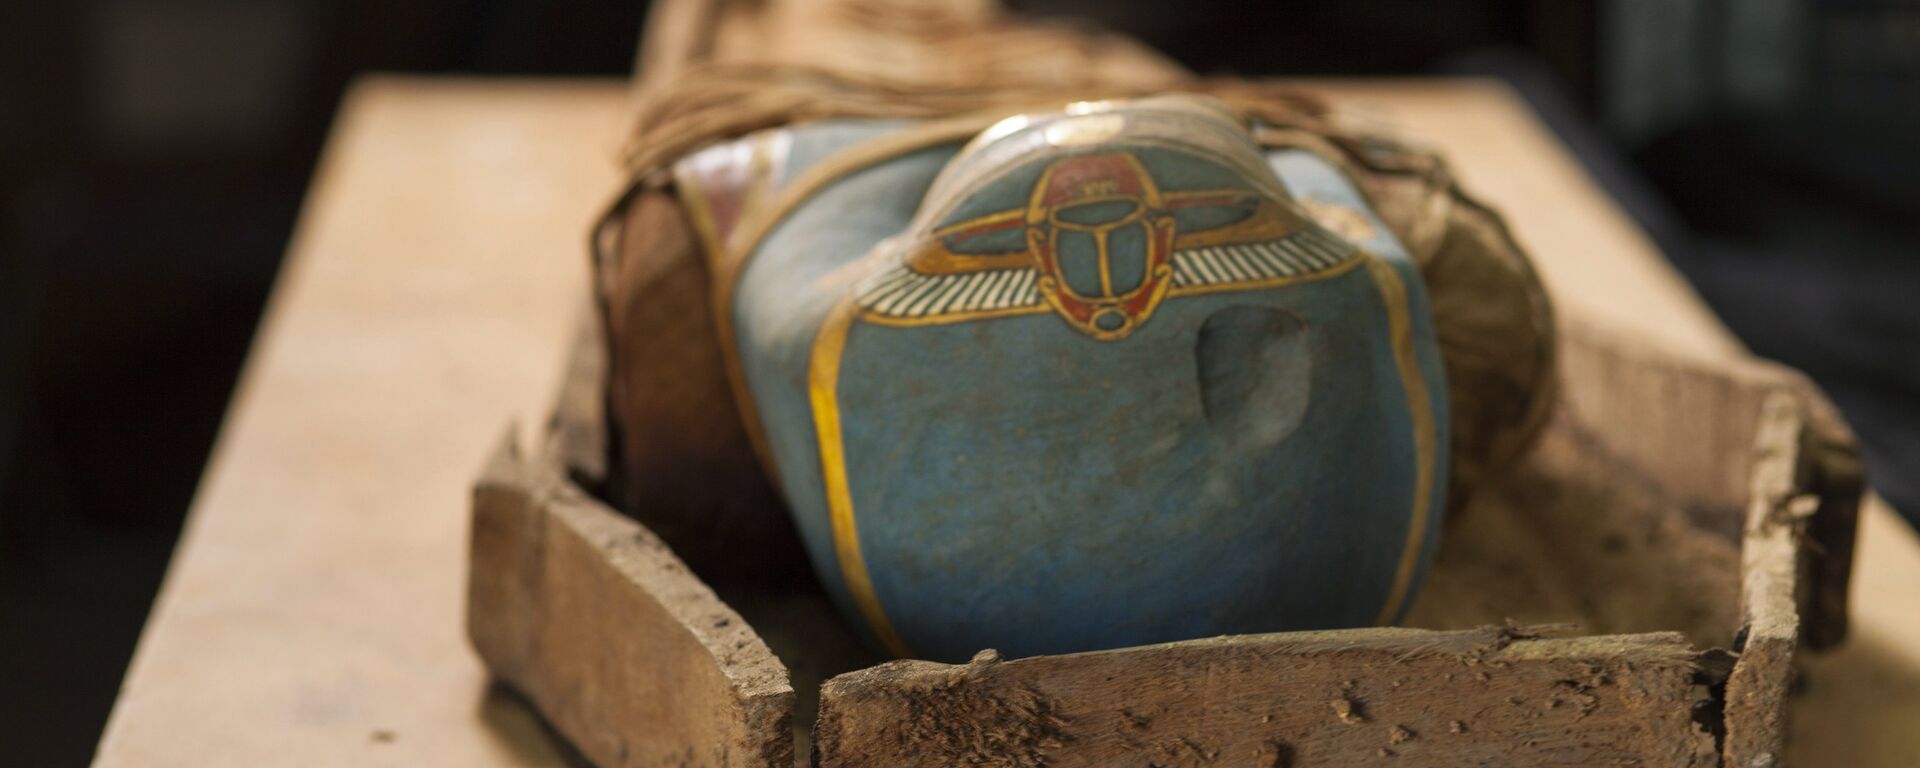 La momia descubierta en el oasis de El Fayum, Egipto - Sputnik Mundo, 1920, 04.02.2021